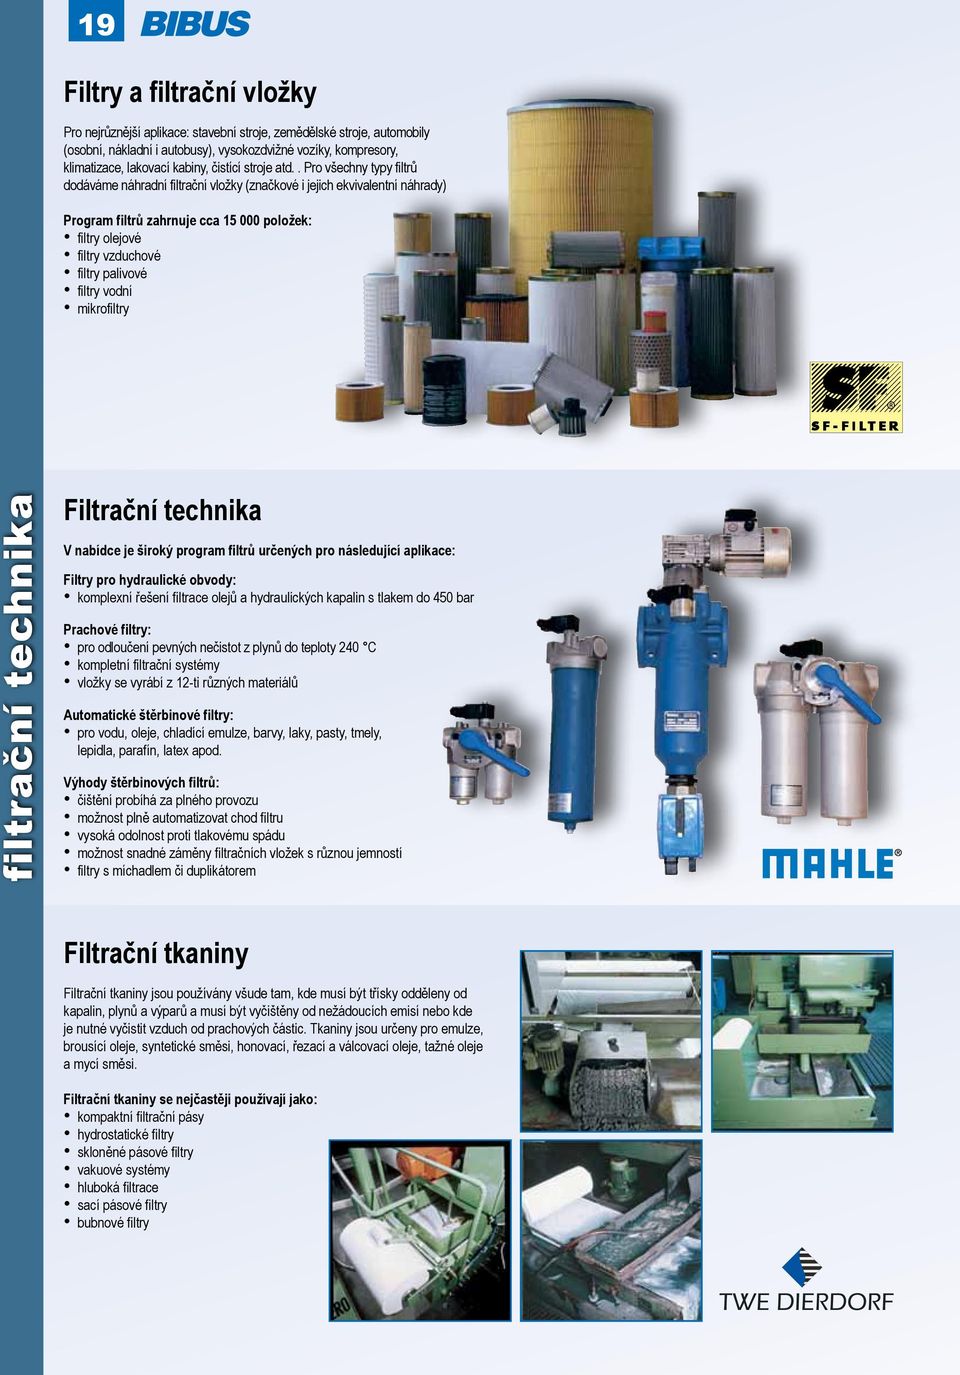 . Pro všechny typy filtrů dodáváme náhradní filtrační vložky (značkové i jejich ekvivalentní náhrady) Program filtrů zahrnuje cca 15 000 položek: filtry olejové filtry vzduchové filtry palivové